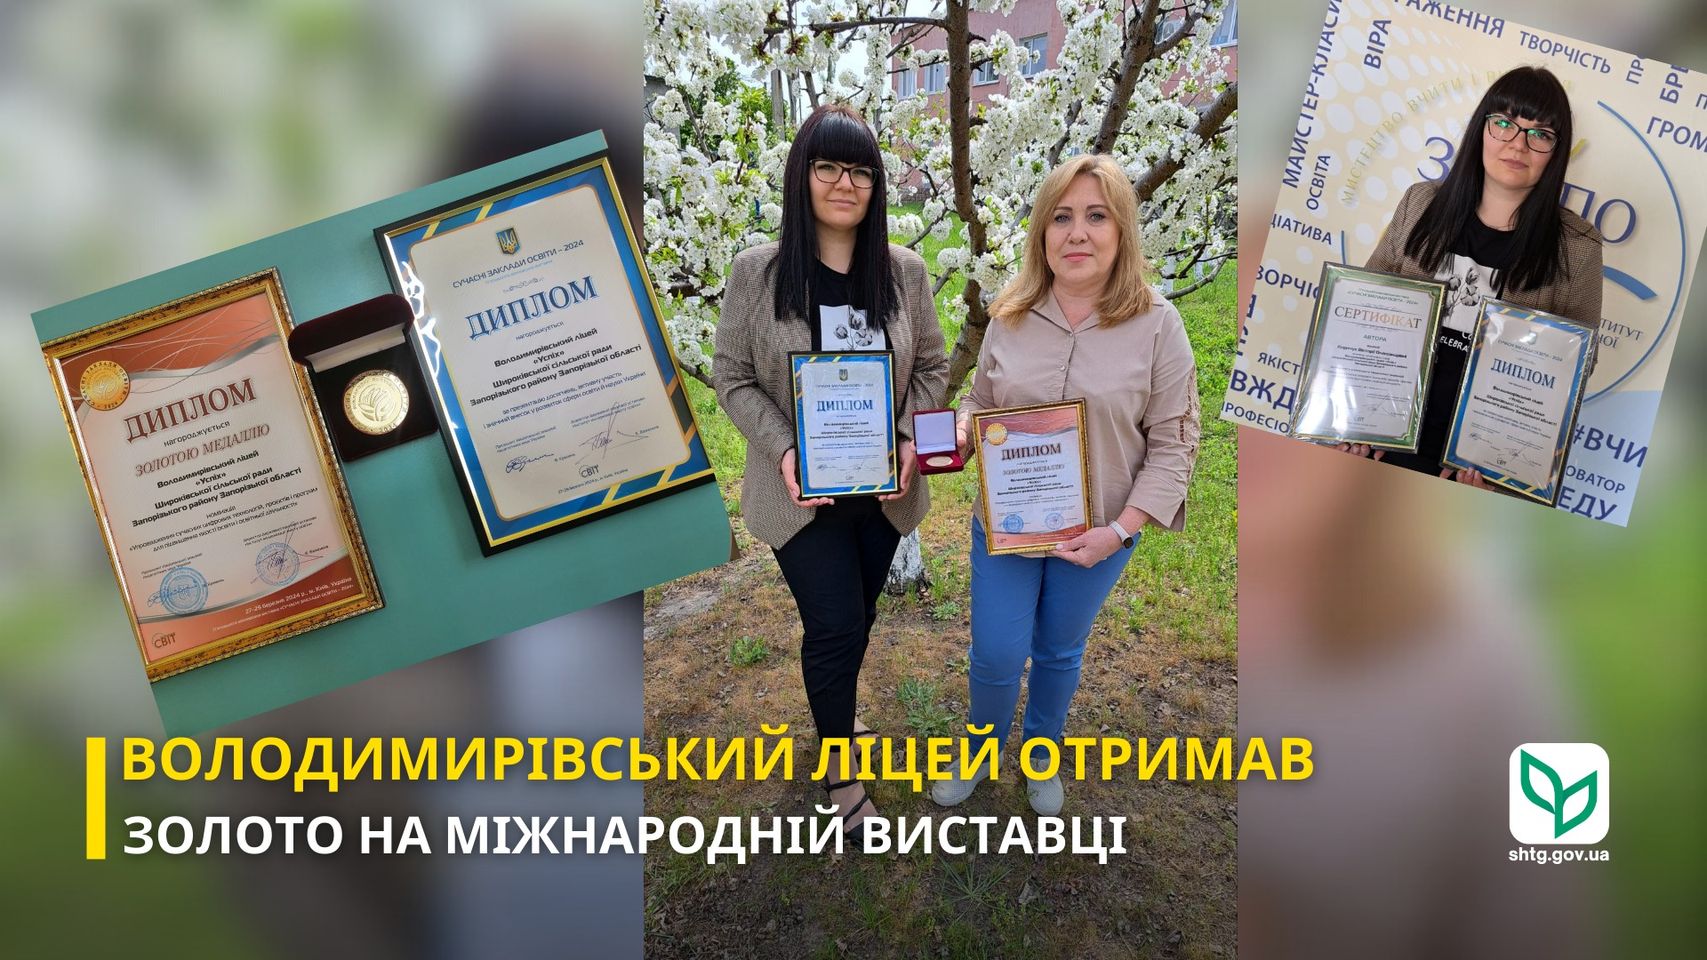 Володимирівський ліцей «УСПІХ» здобув перемогу на міжнародній виставці